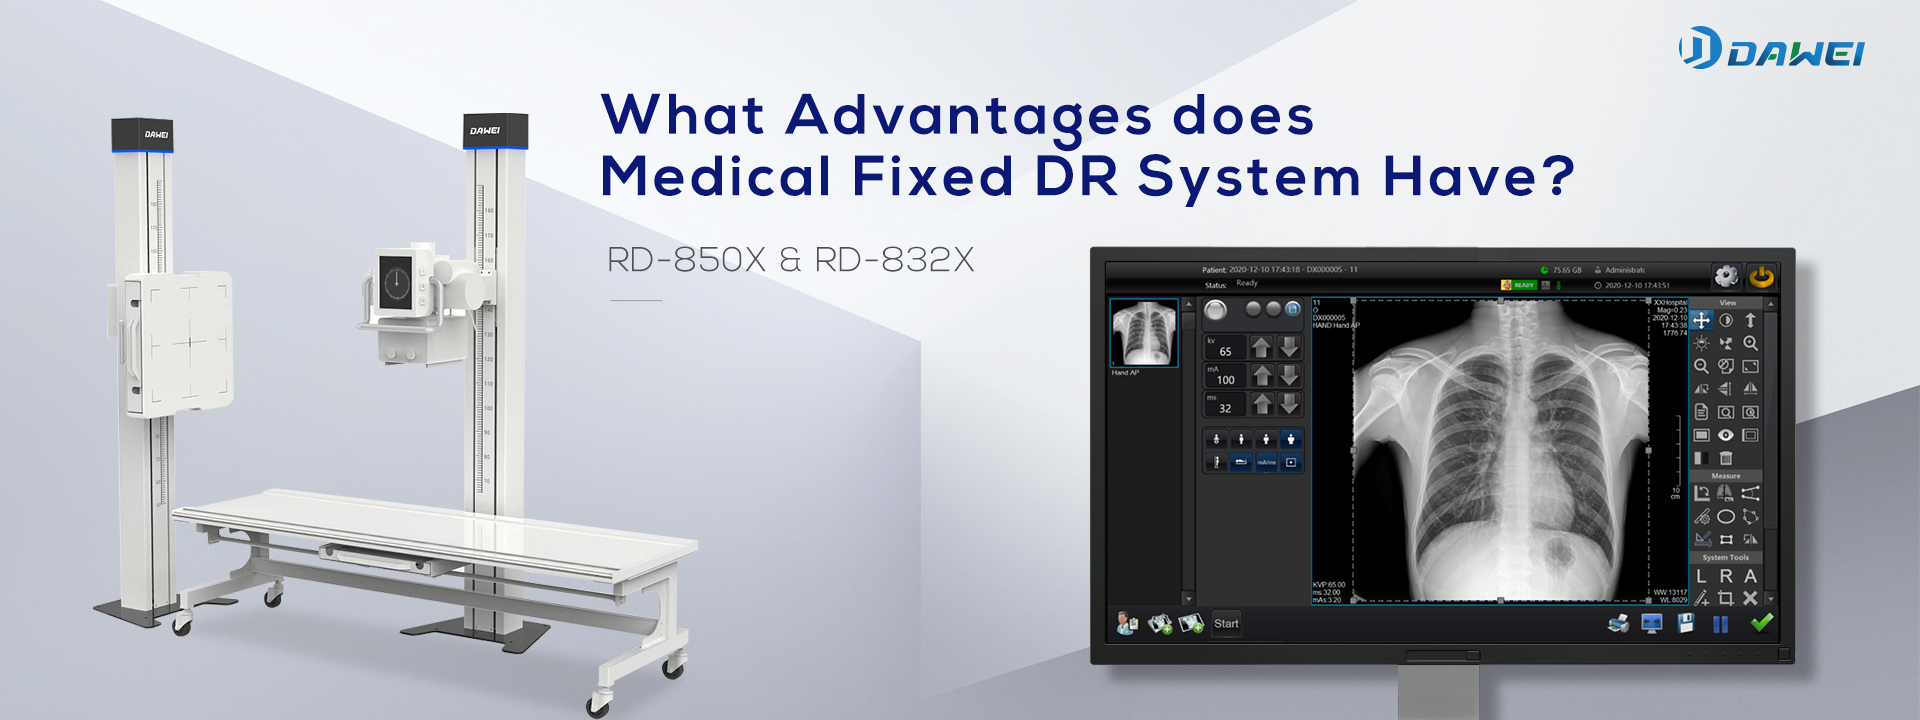 Jakie zalety ma medyczny stały system DR?